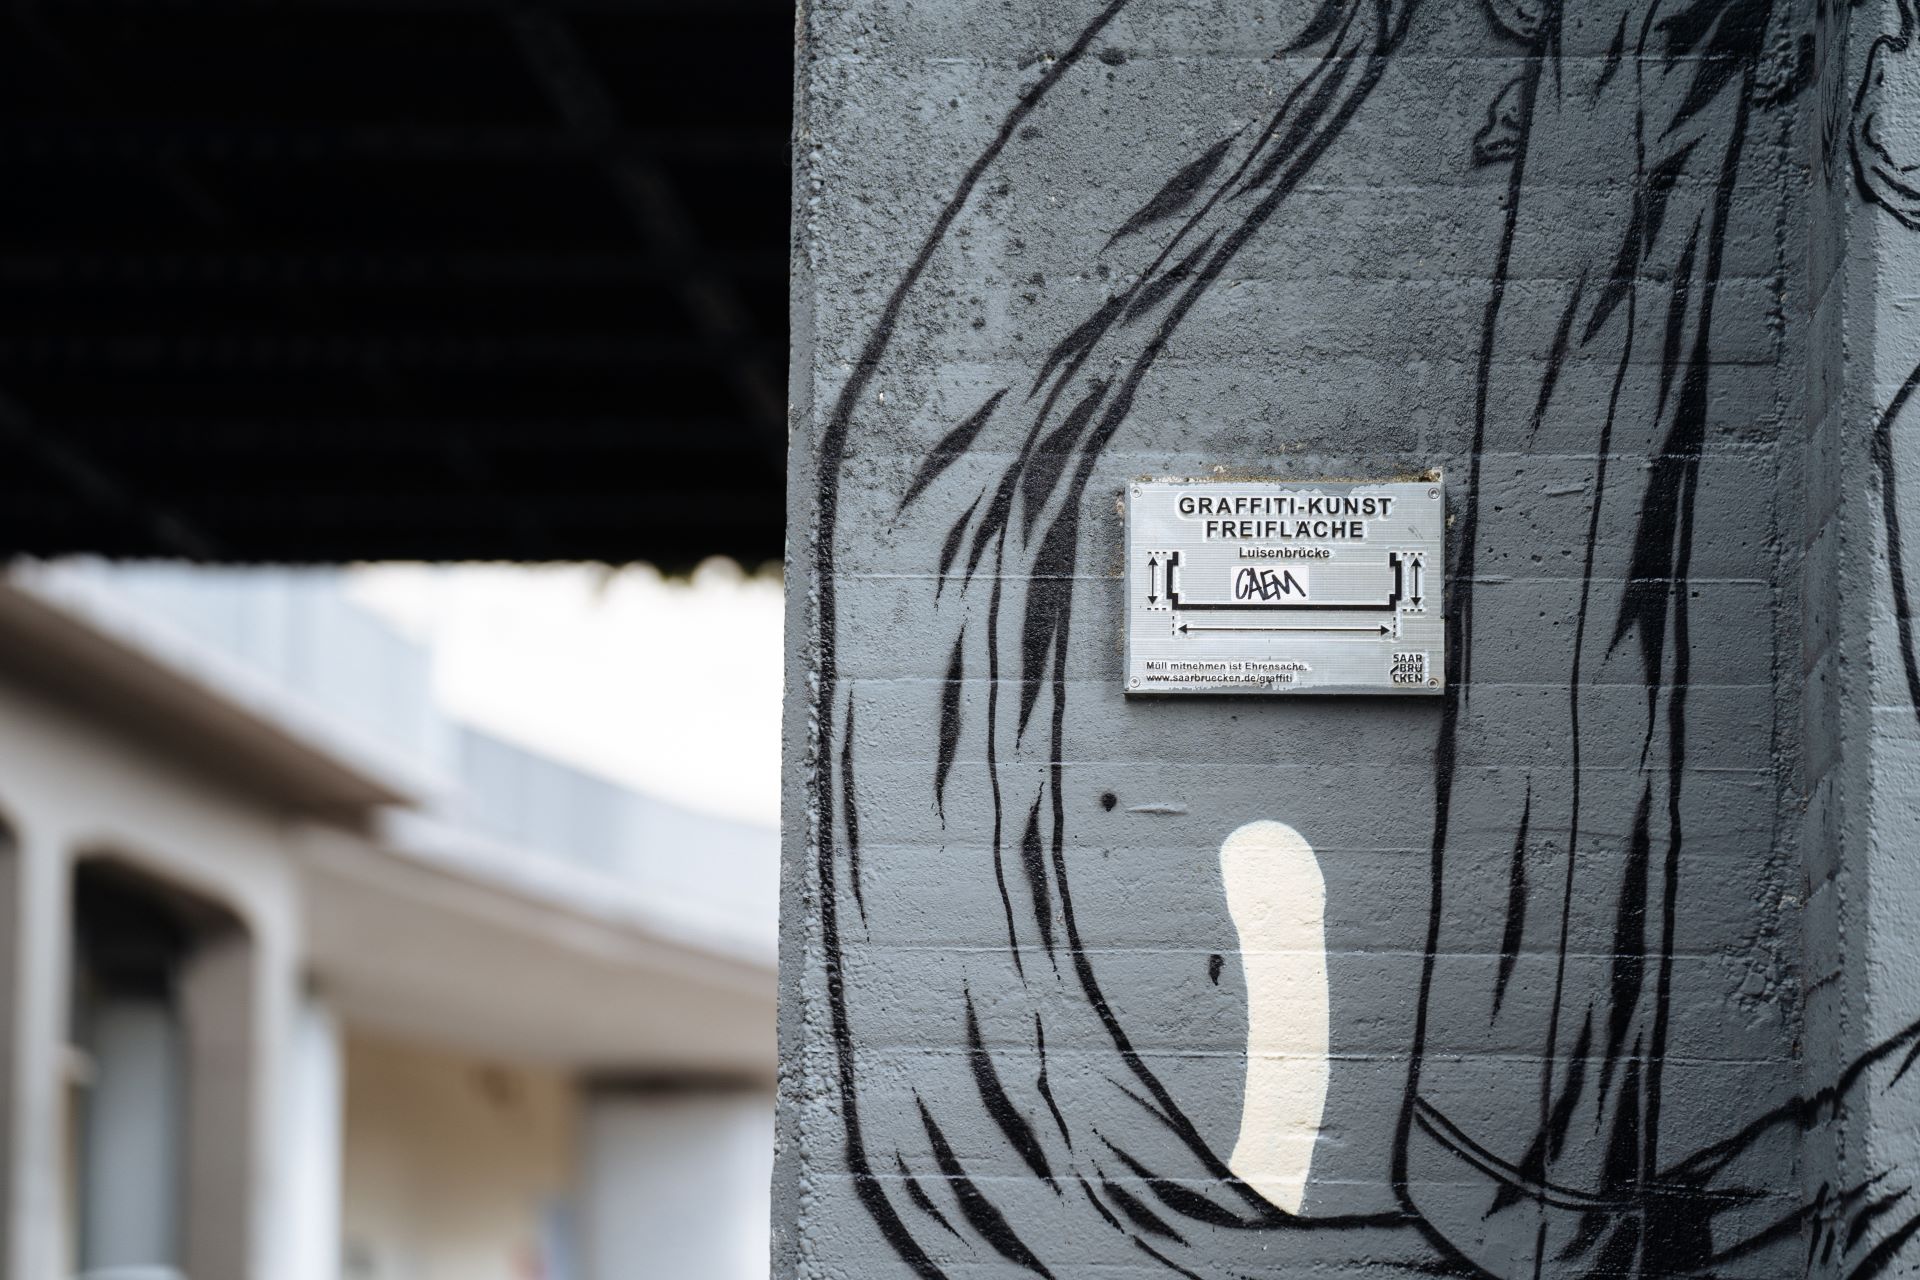 Sur un mur fortement peint sous un pont se trouve un panneau indiquant "Graffiti Art Open Space".